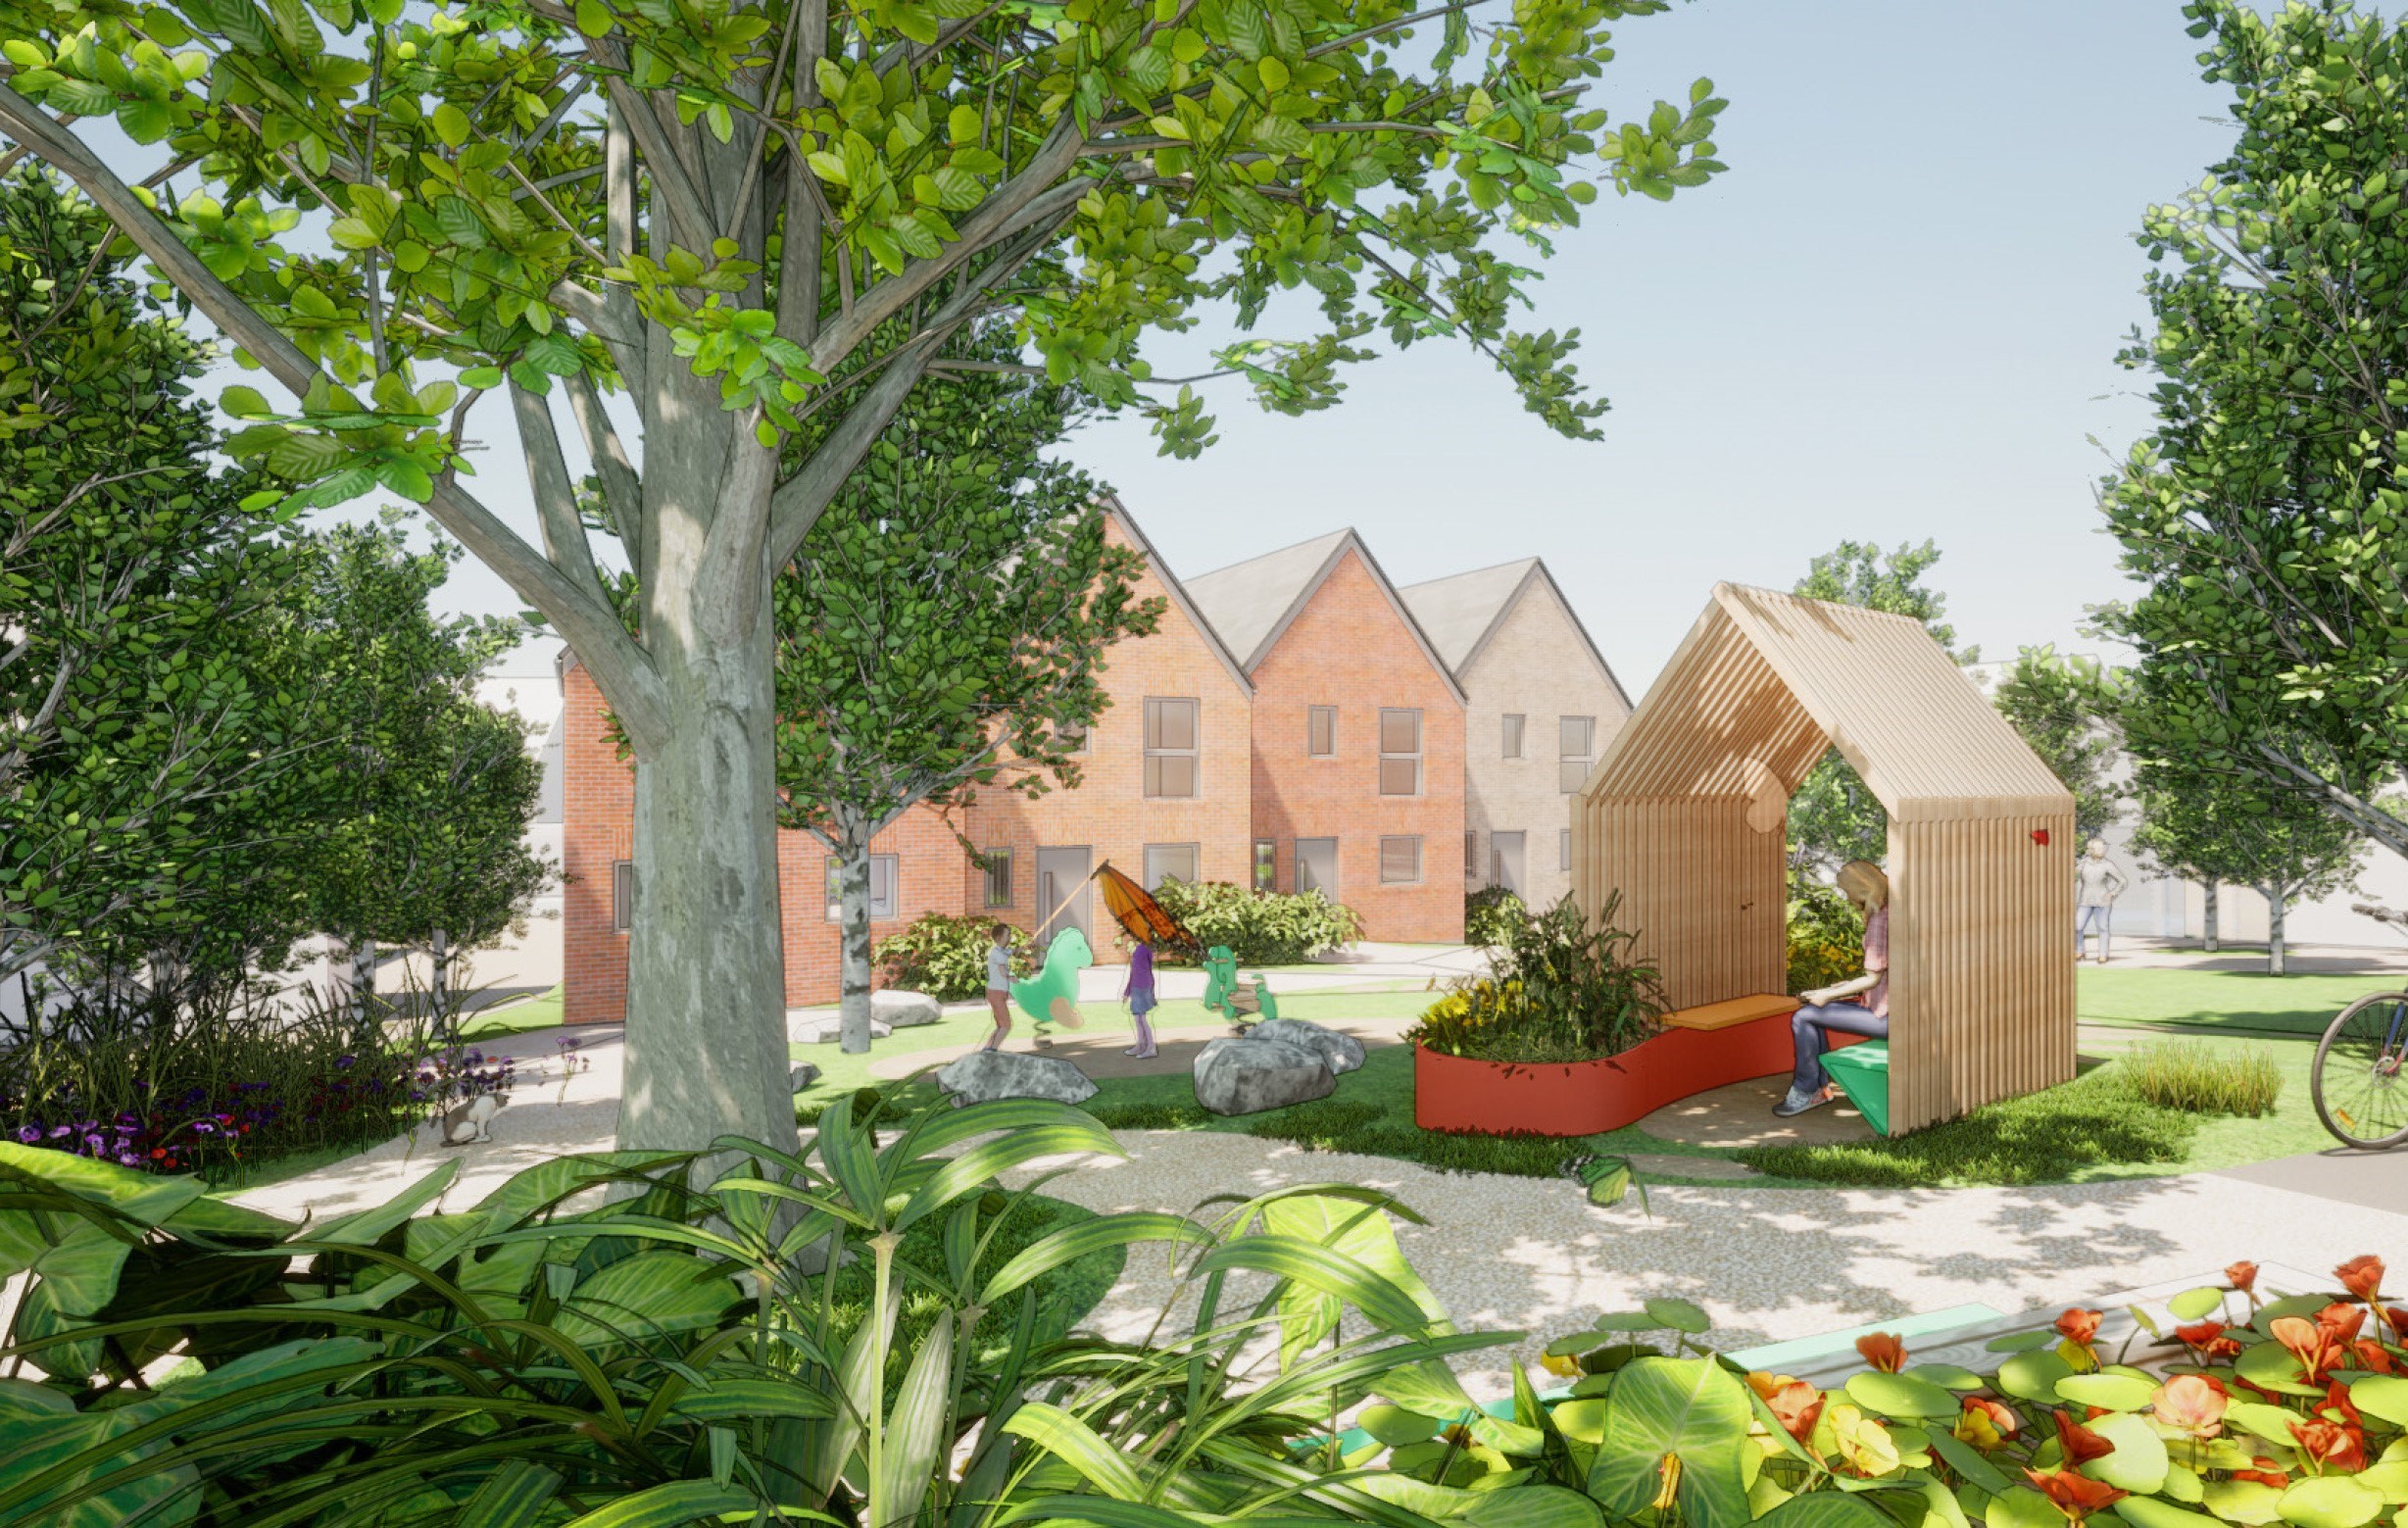 Animated image of housing